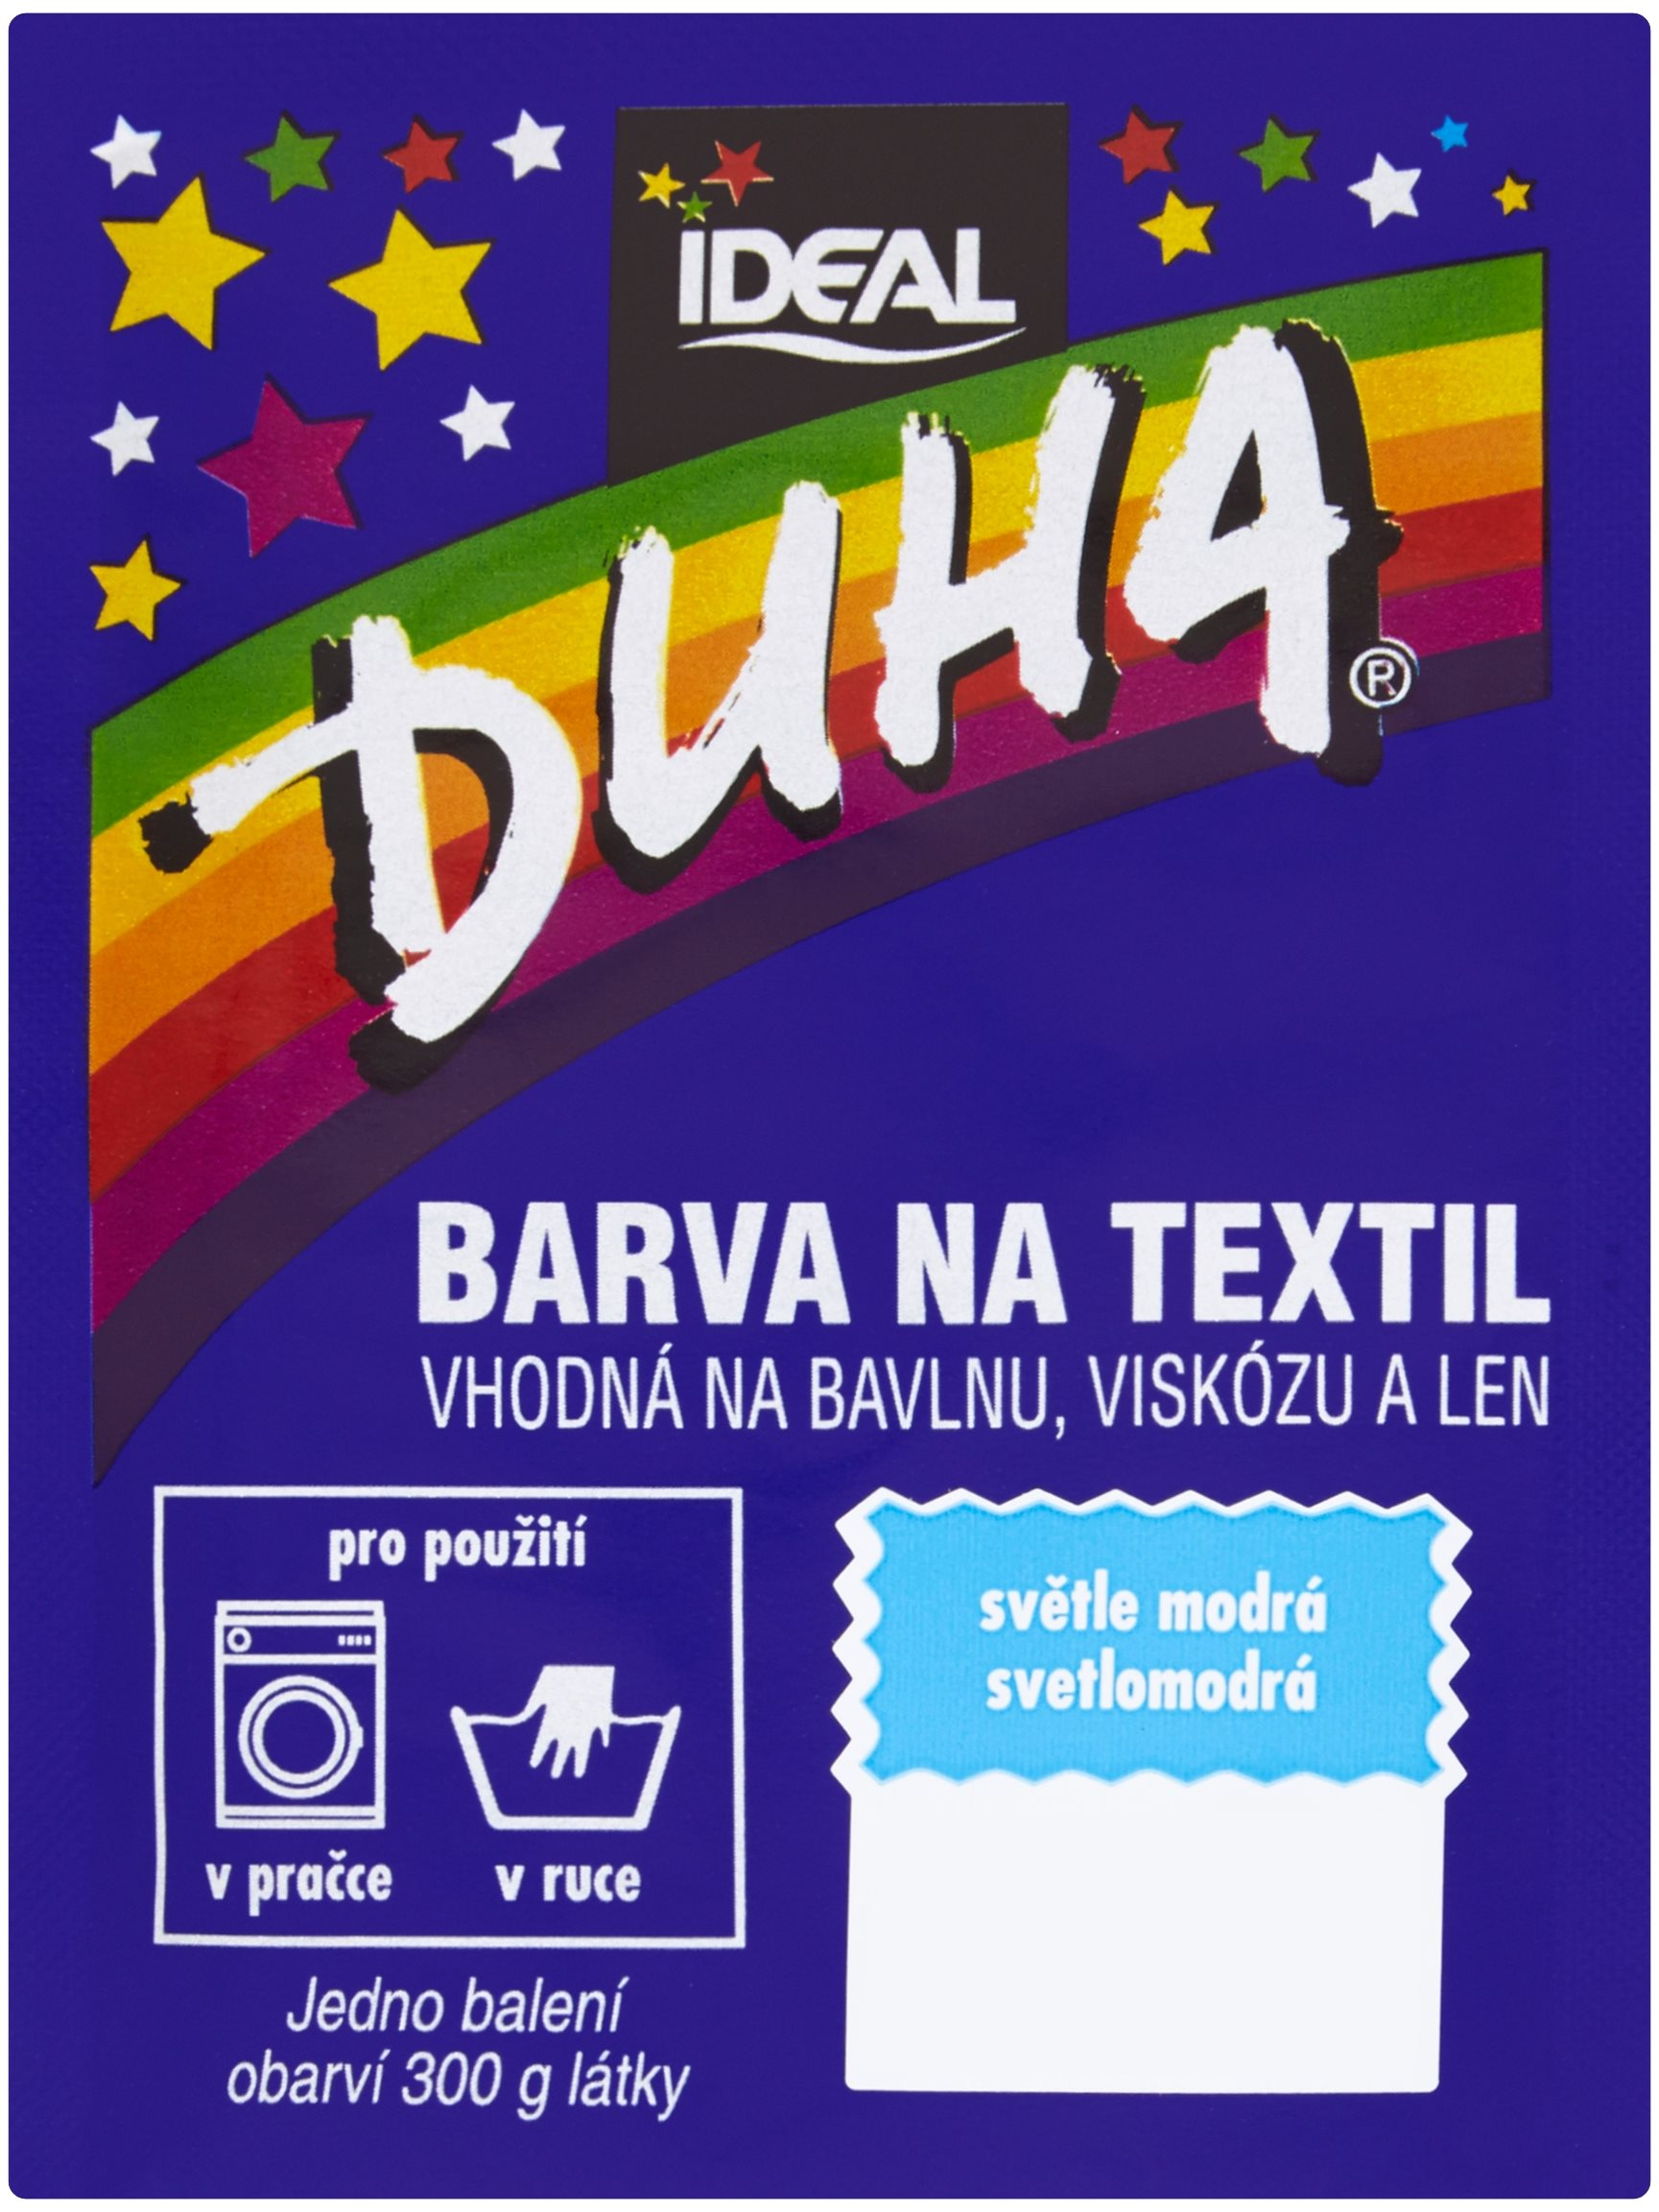 Textilfesték DUHA Textilfesték - világoskék 15 g